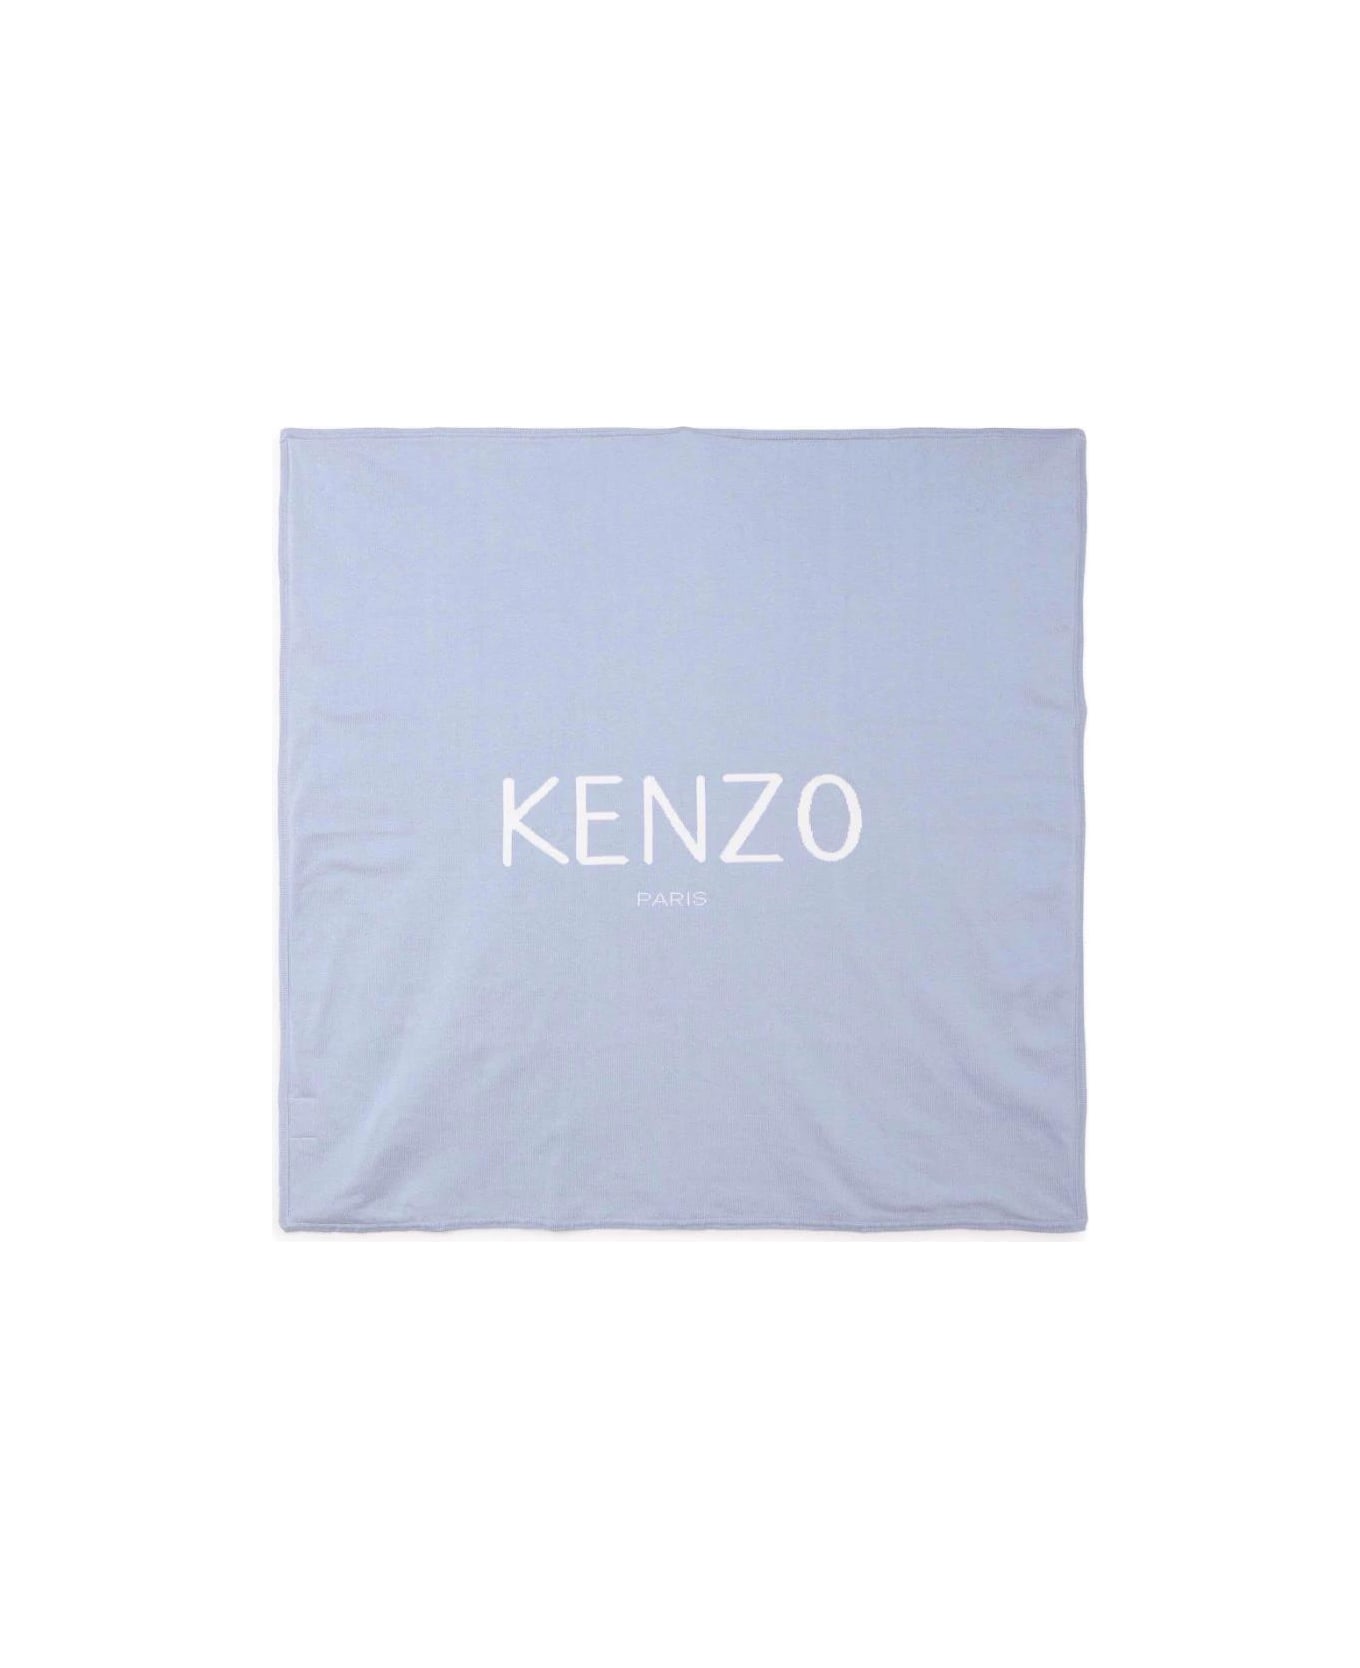 Kenzo Kids Kenzo Coperta Celeste In Maglia Di Cotone Baby Boy - Celeste